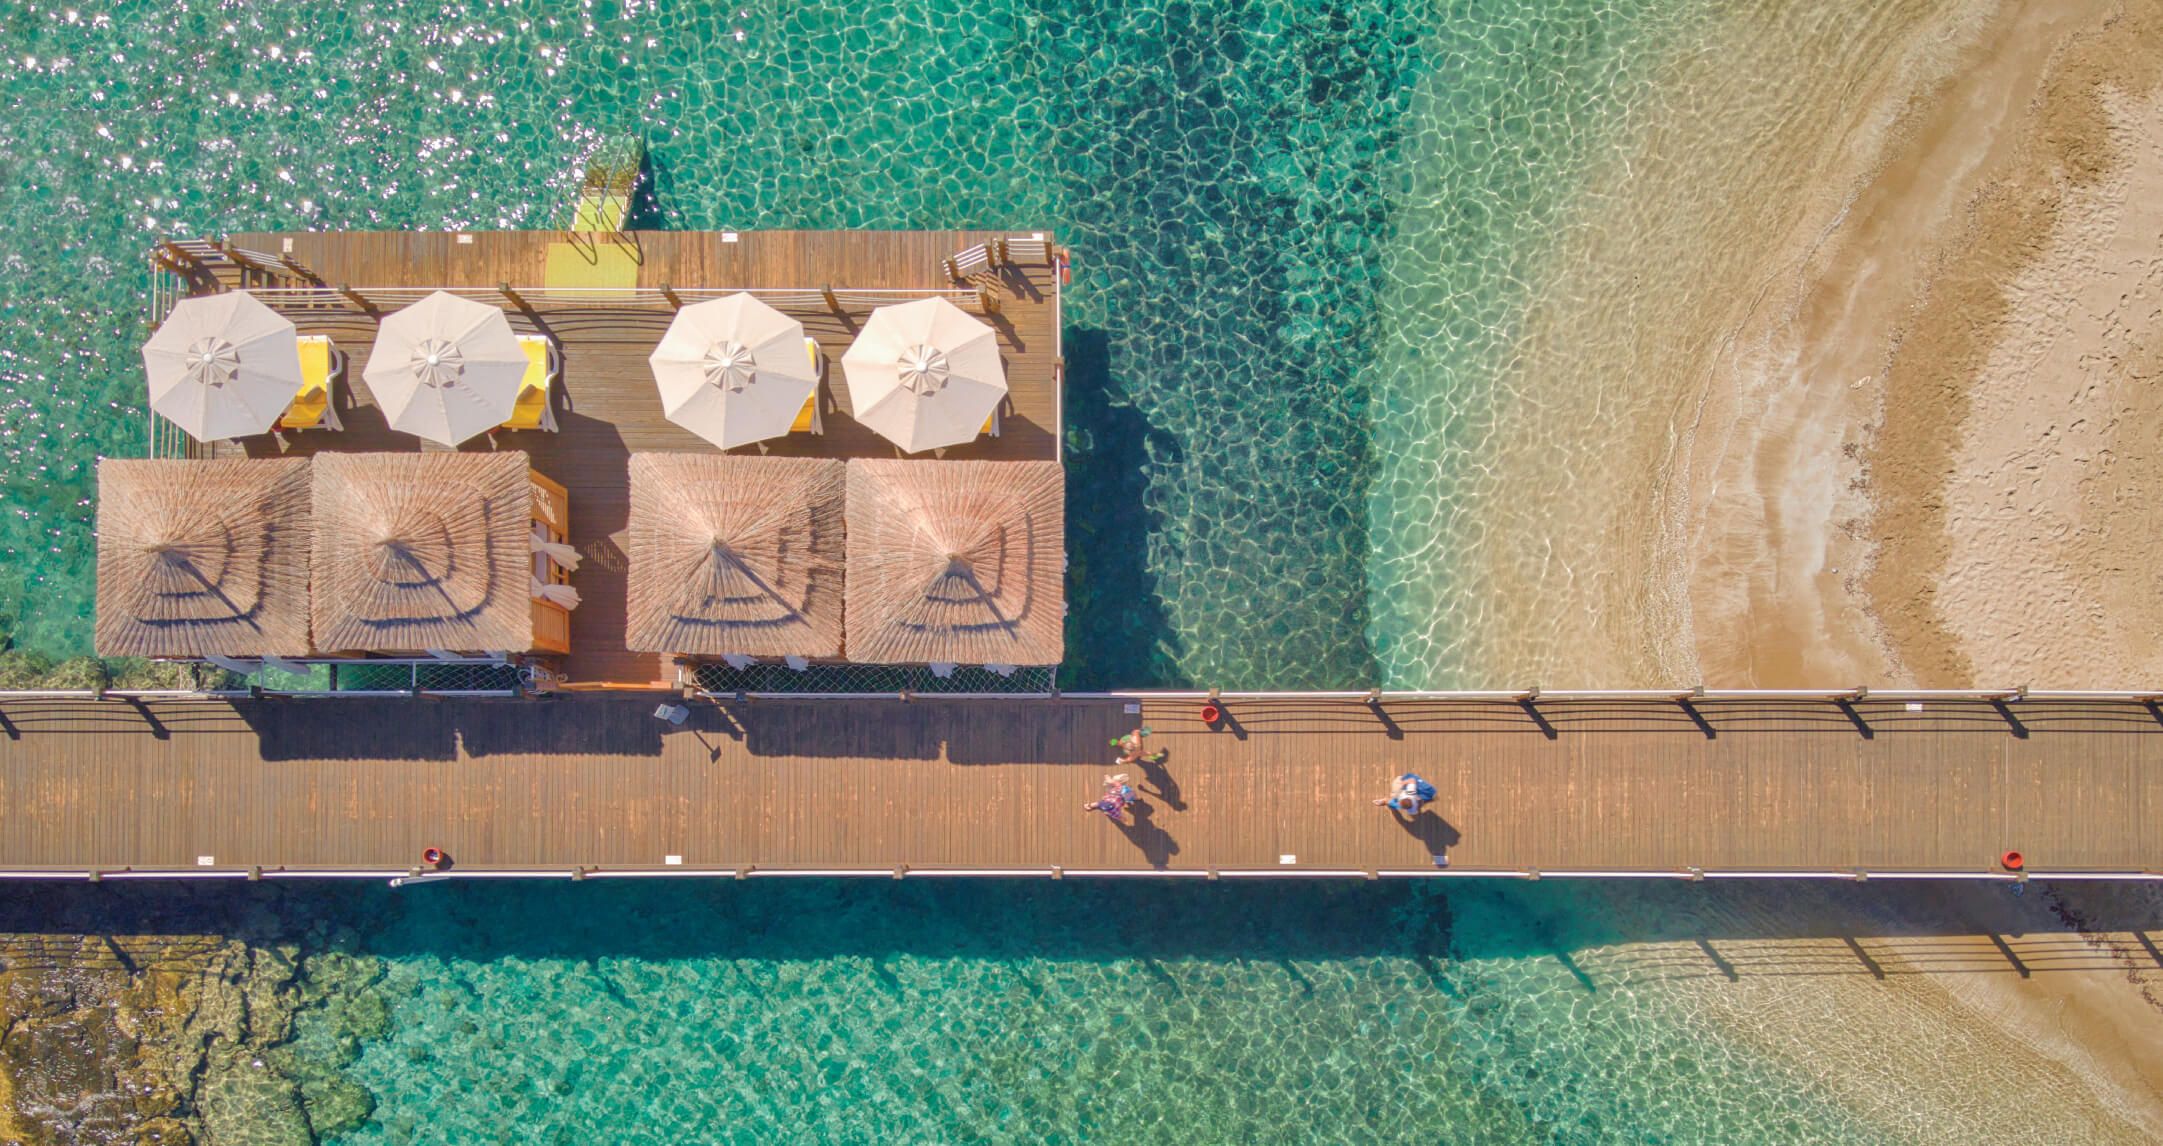 Salamis Bay Conti Hotel Casino Kıbrıs